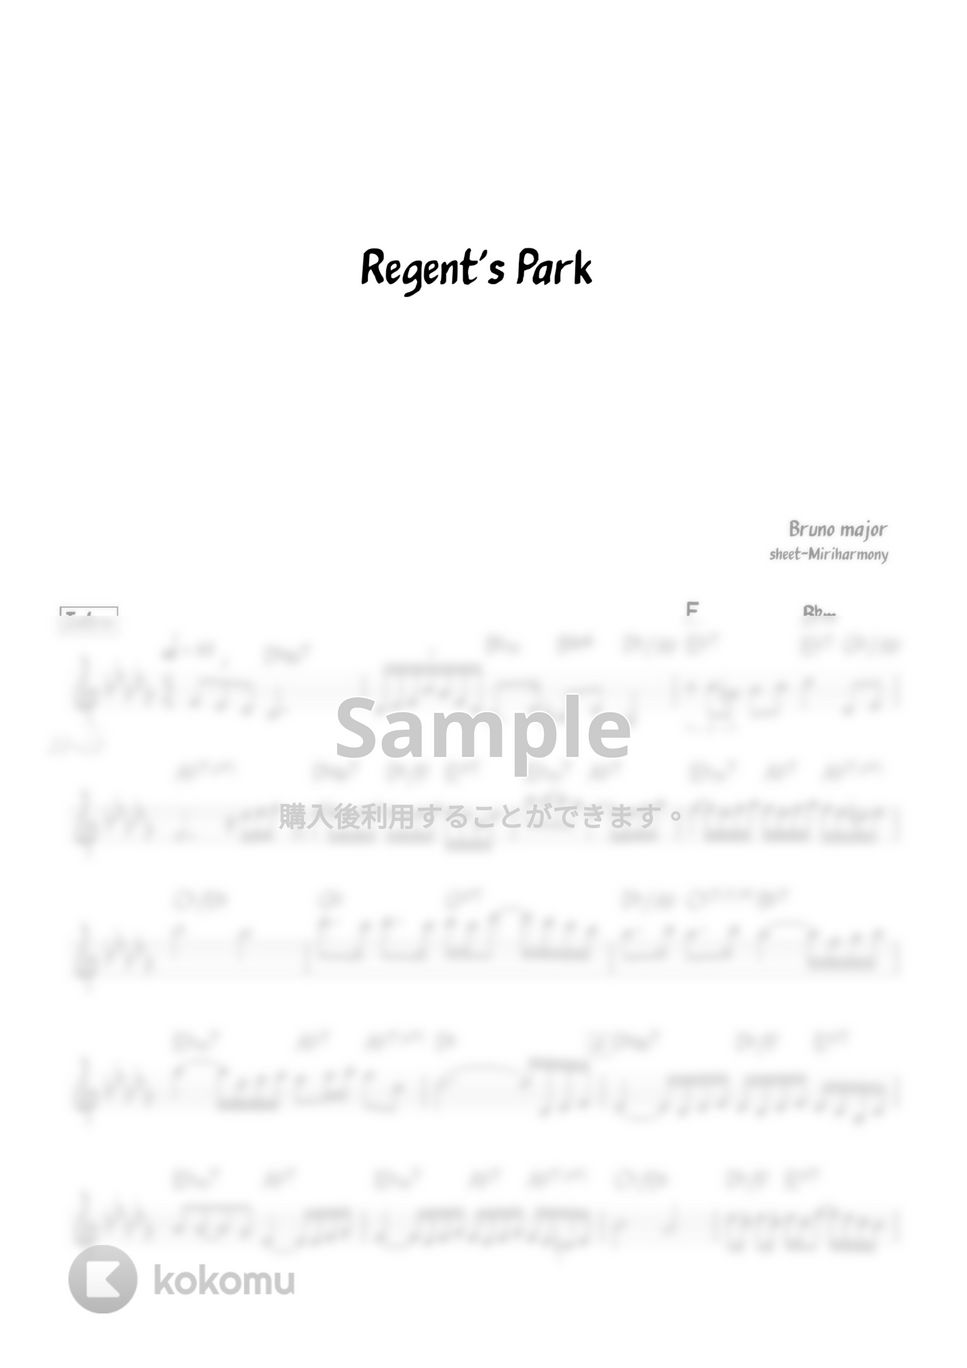 Bruno Major - Regent‘s Park (lead sheet) by Miriharmony